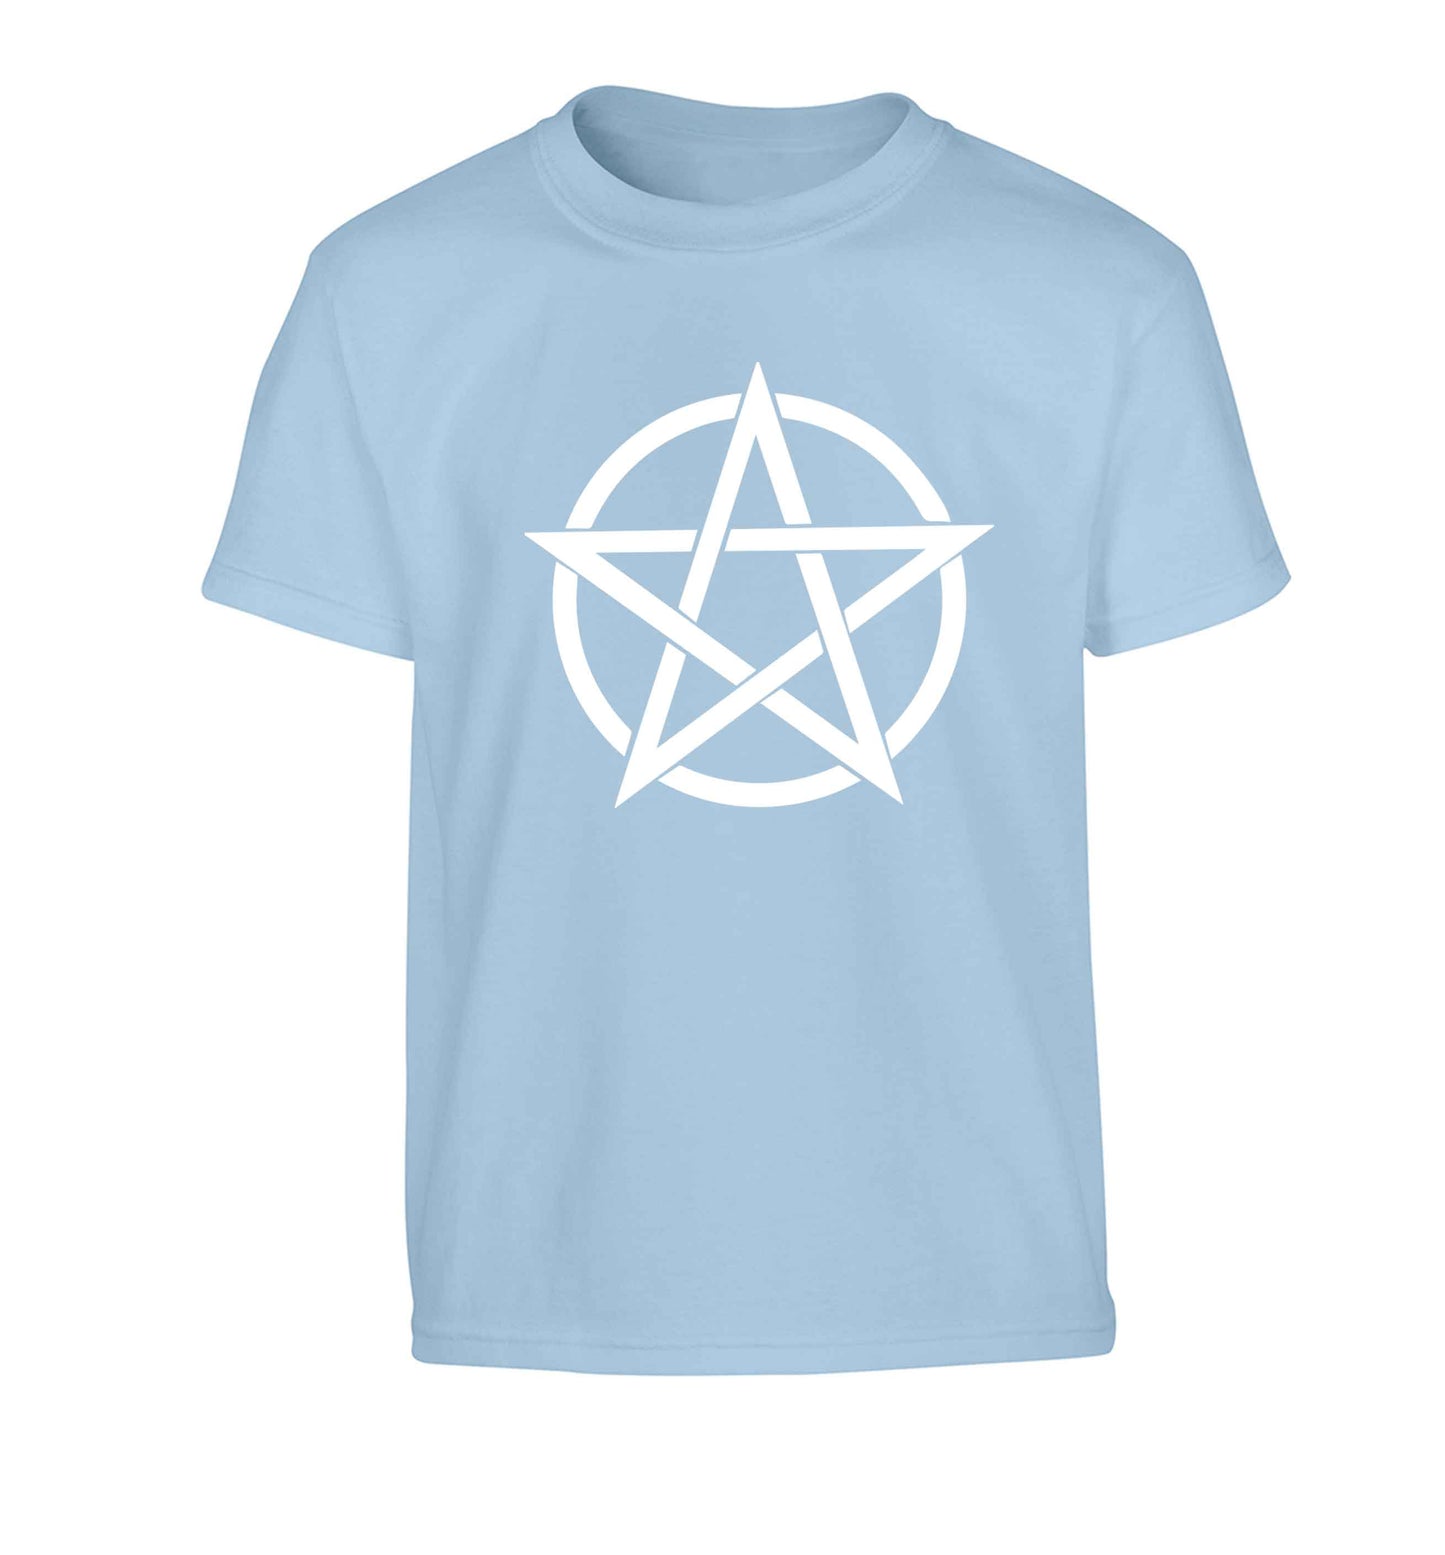 Pentagram symbol Children's light blue Tshirt 12-13 Years